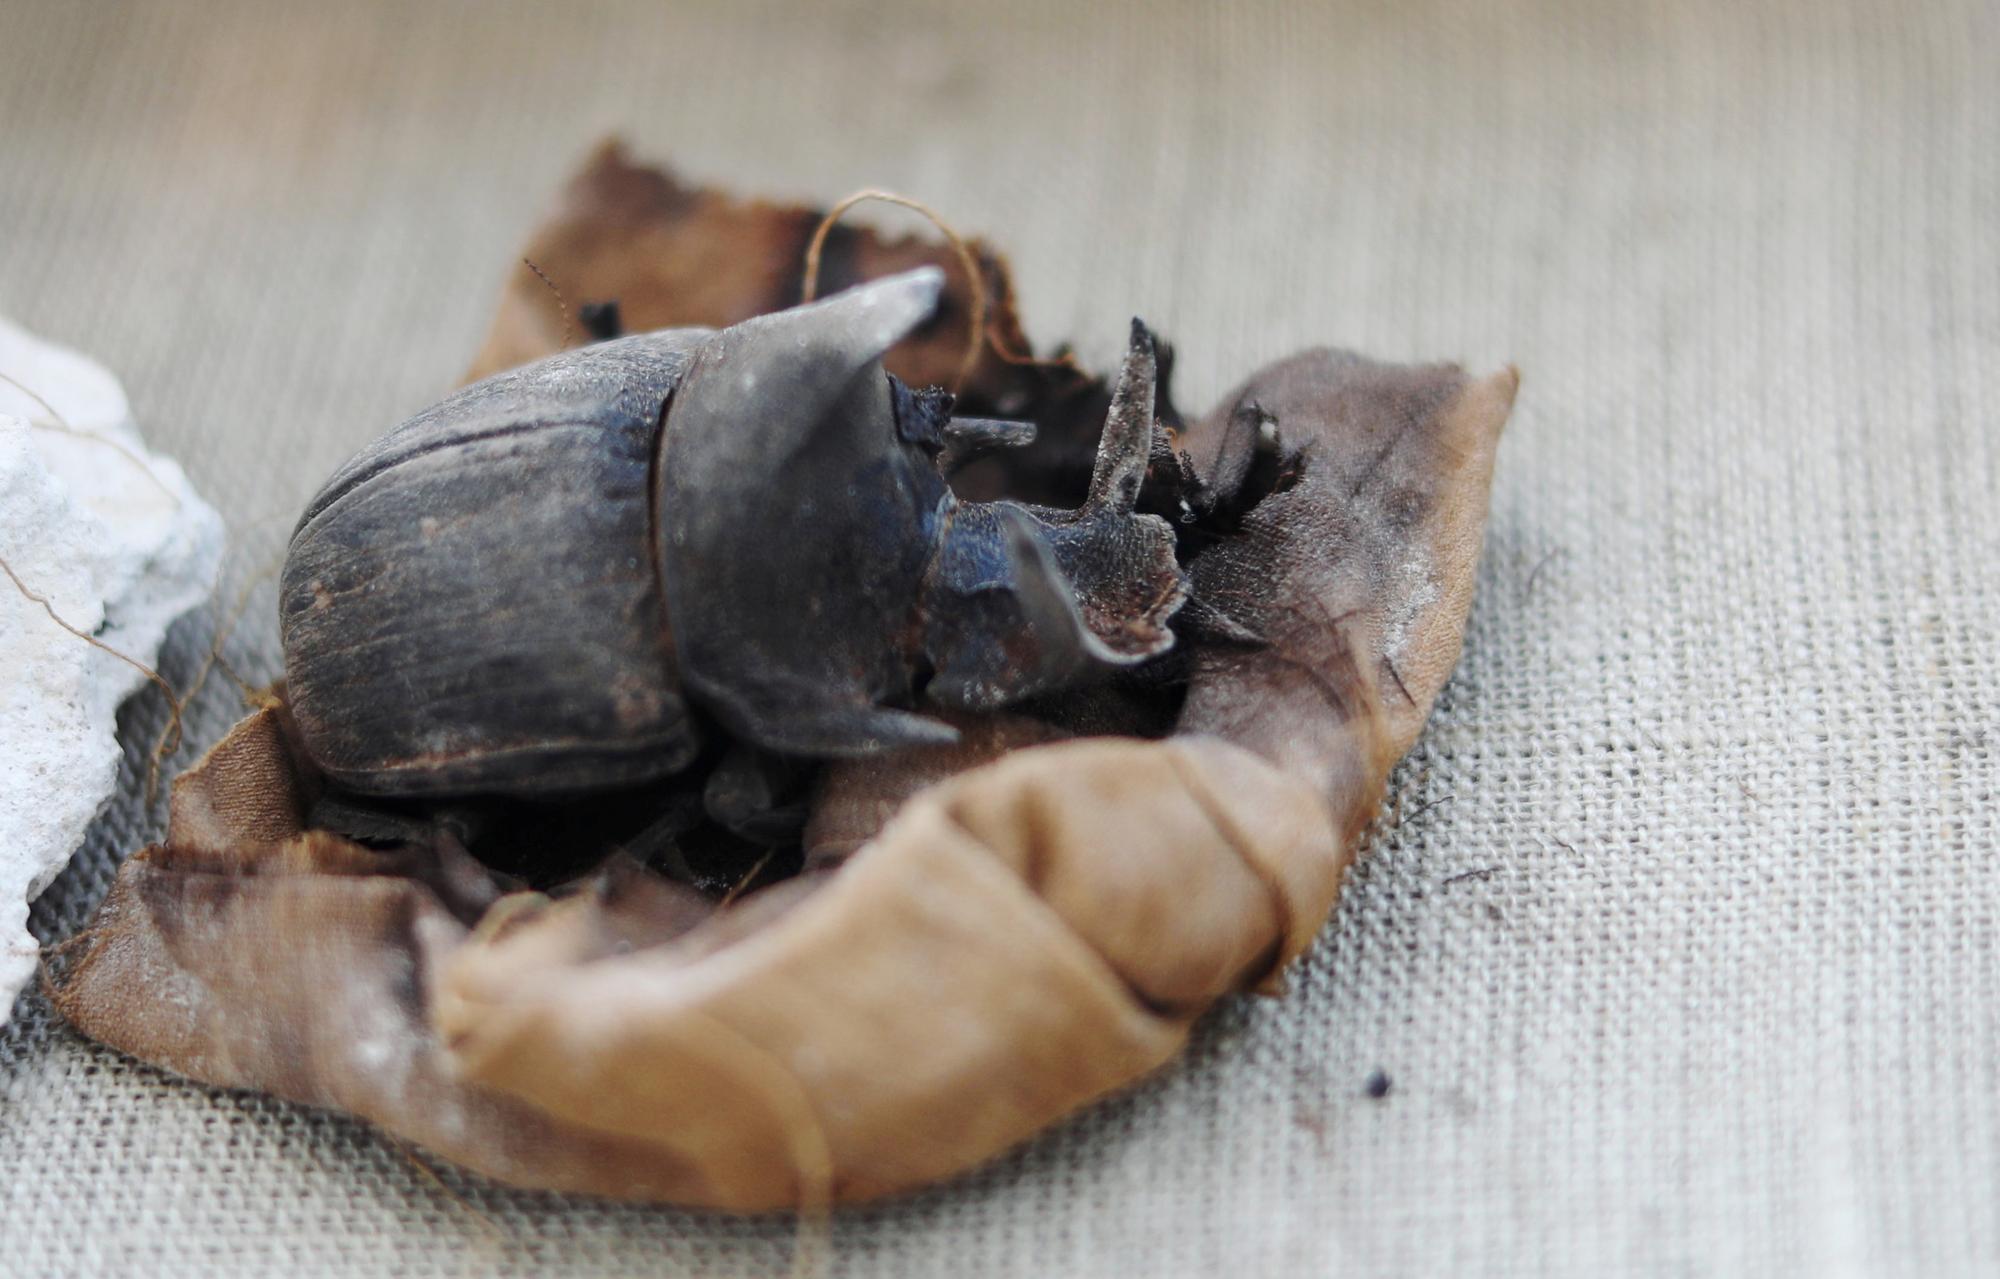 Un scarabée momifié est une découverte rarissime, retrouvé dans la nécropole de Saqqarah, en Egypte. [Reuters - Mohamed Abd El Ghany]